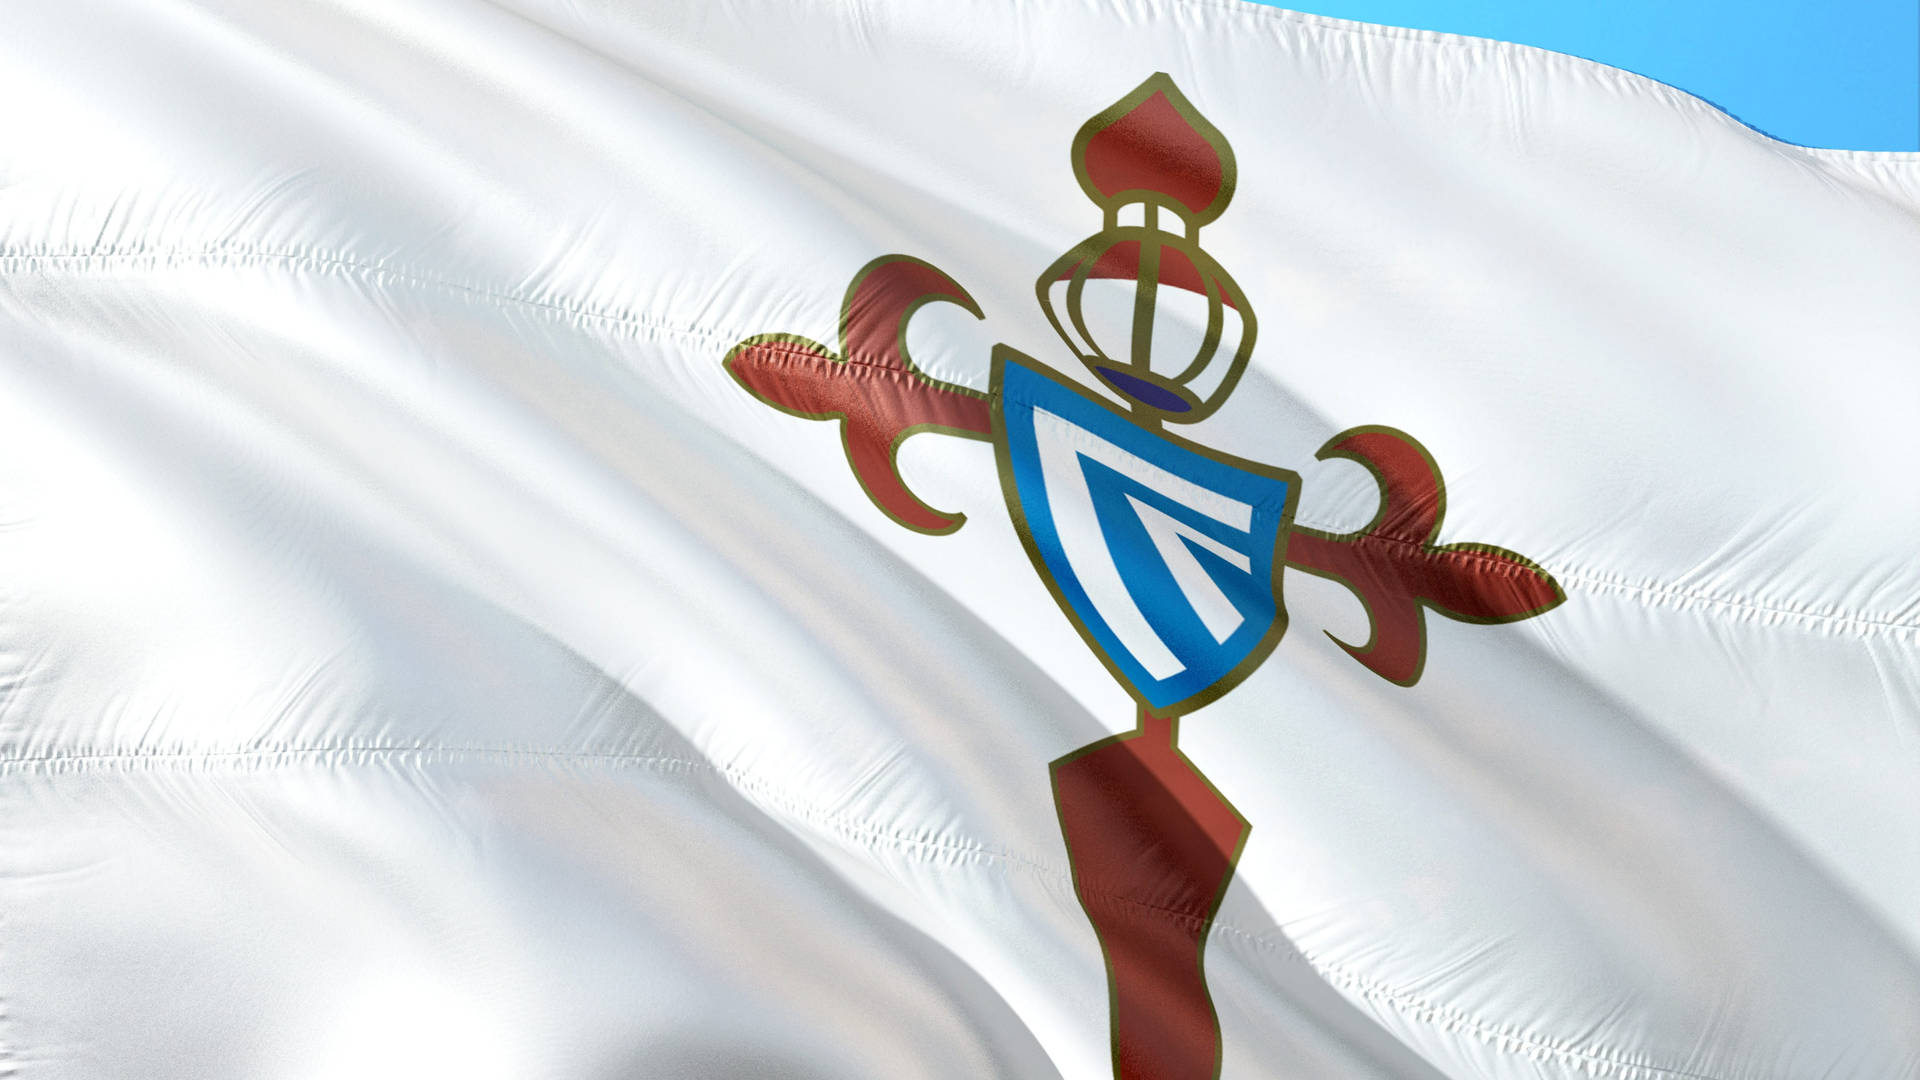 La Liga Celta De Vigo Flag